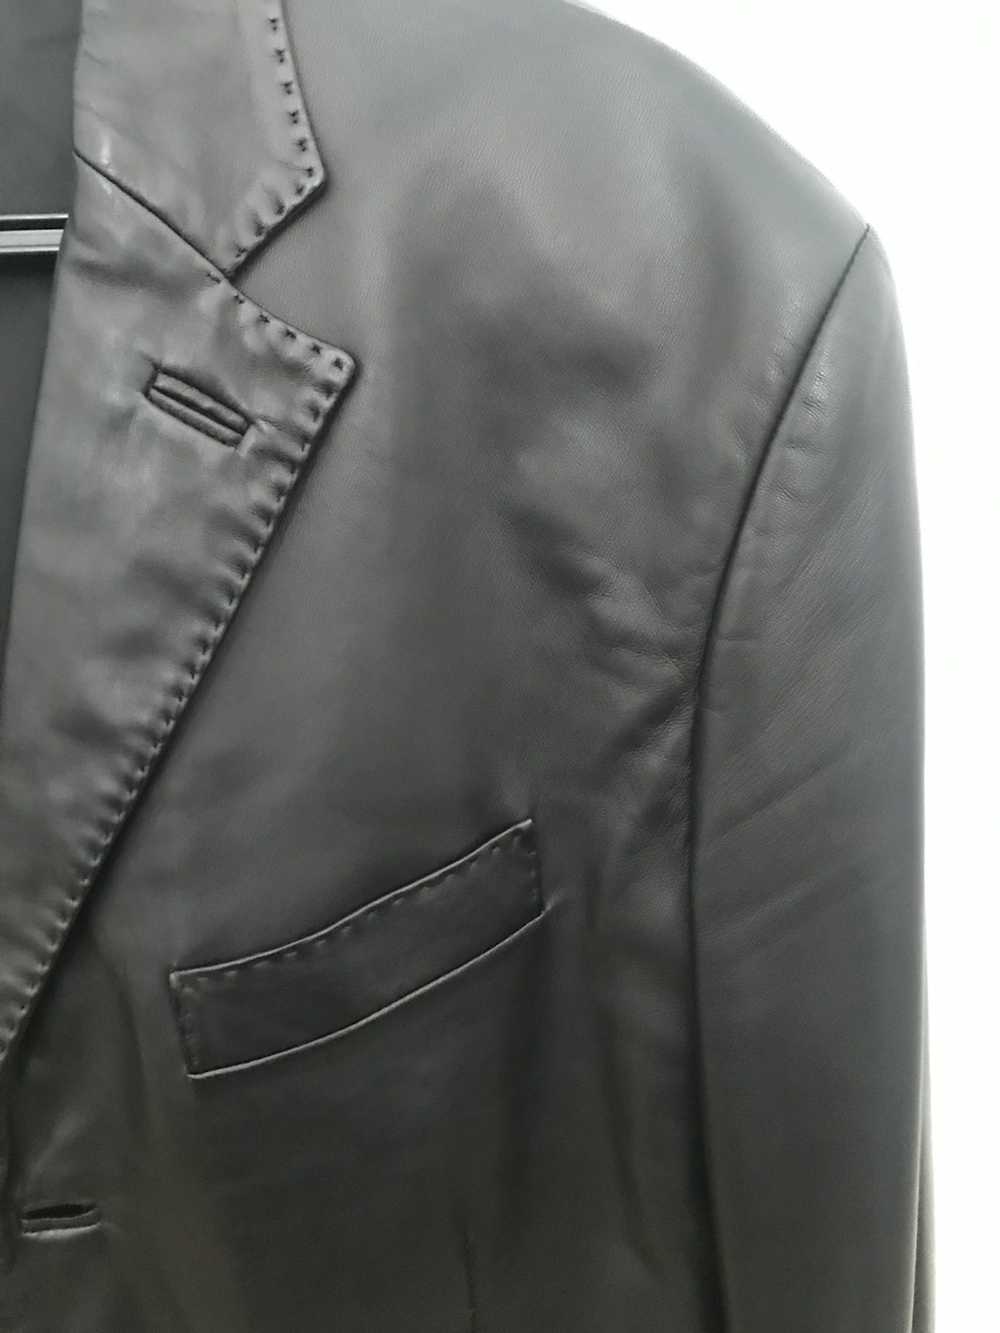 Salvatore Ferragamo Ferragamo soft leather blazer - image 3